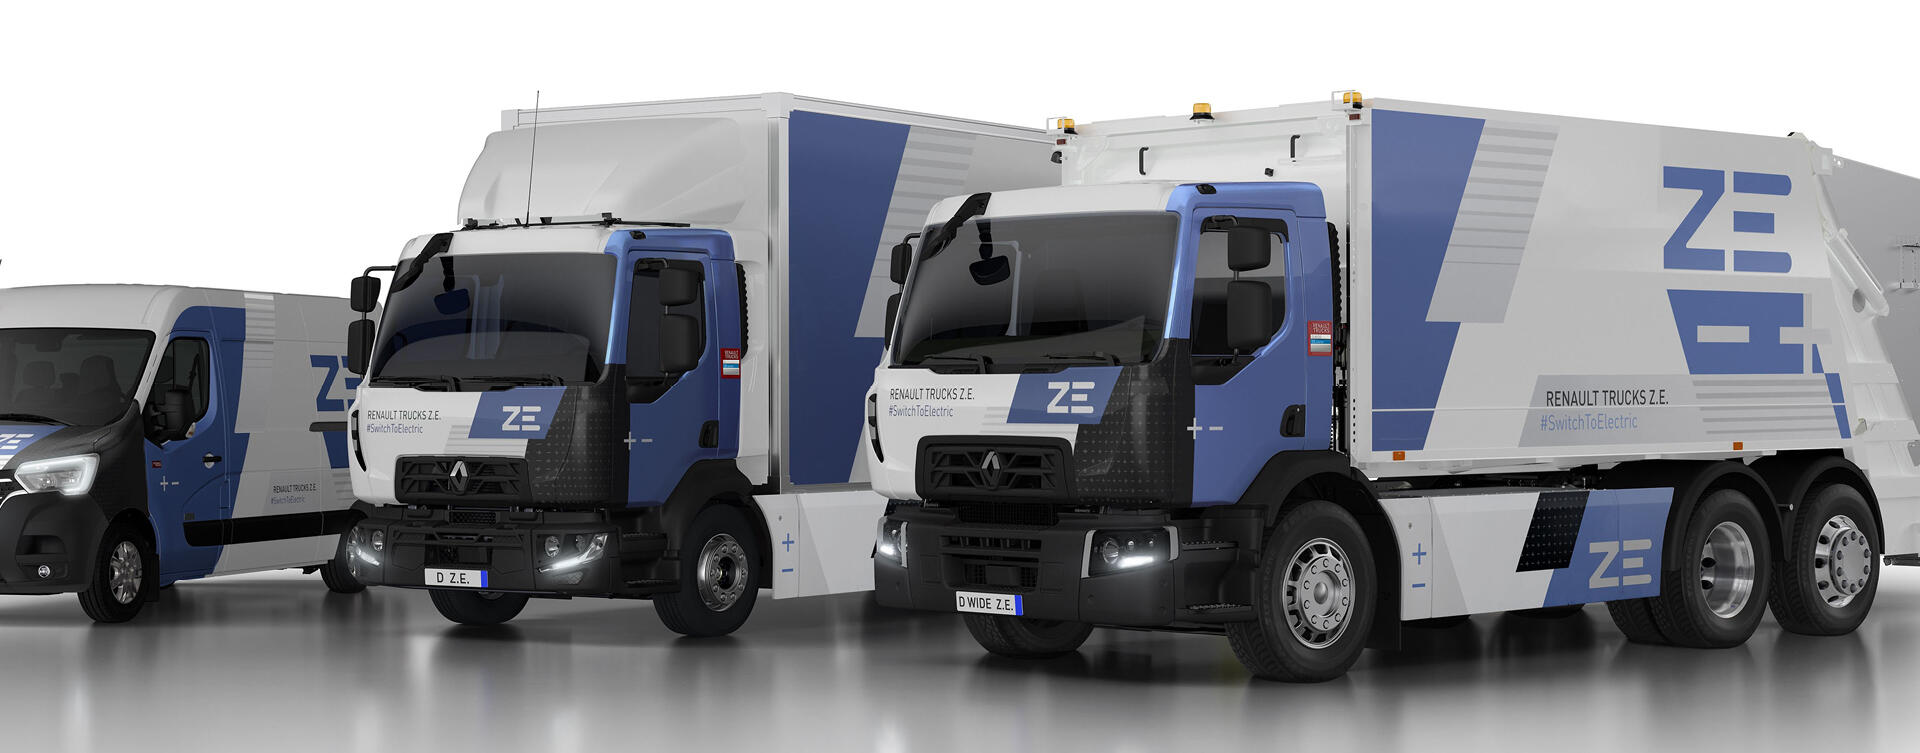 Serieproductie elektrische Renault Trucks begint